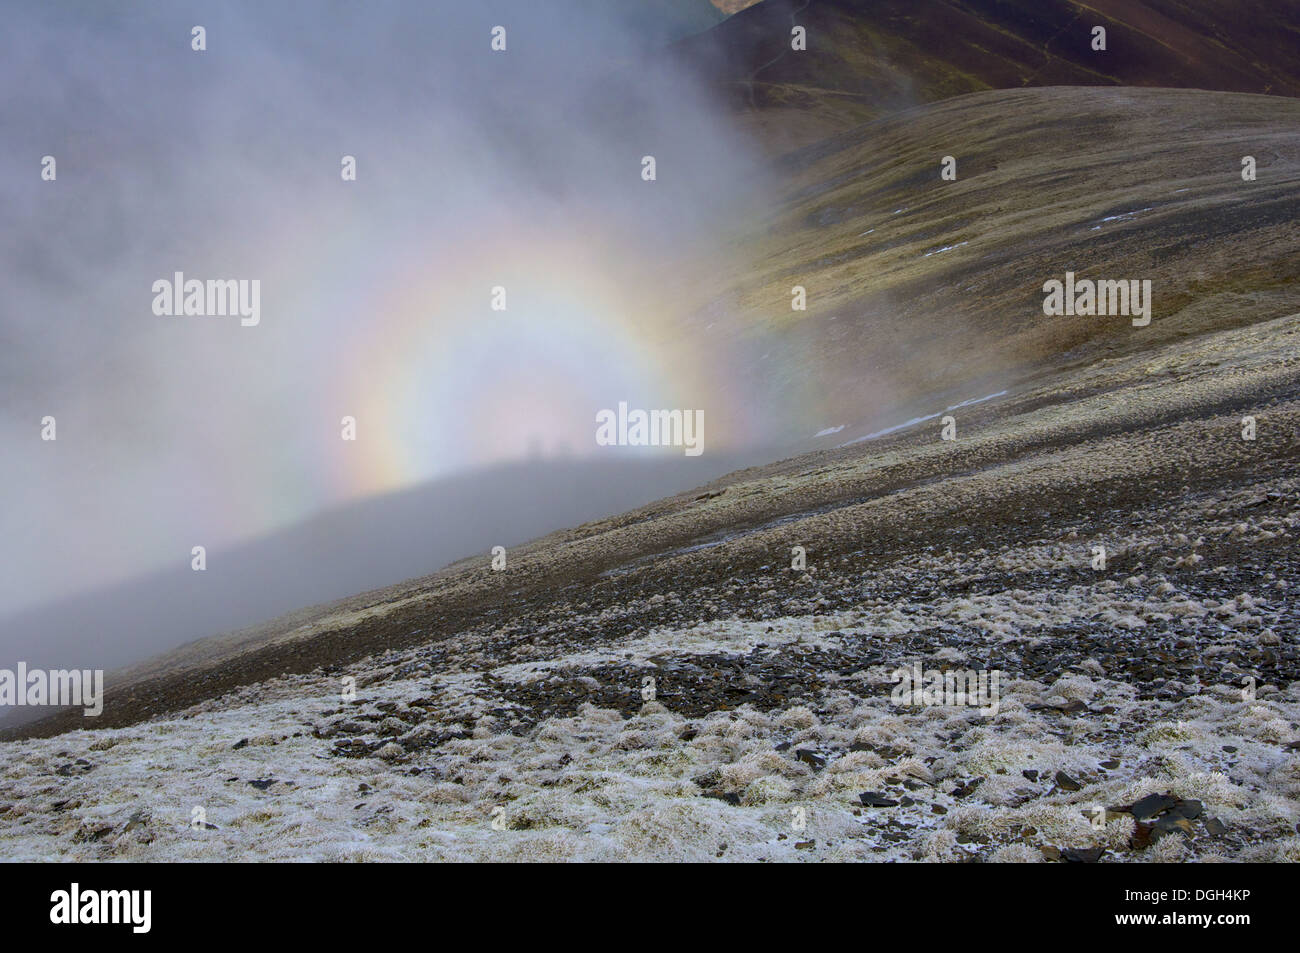 Brocken Gespenst gesehen vom Hügel wird angezeigt, wenn die Sonne hinter der Person, die vom Grat oder Peak in Nebel auf der Suche ist nach unten Stockfoto